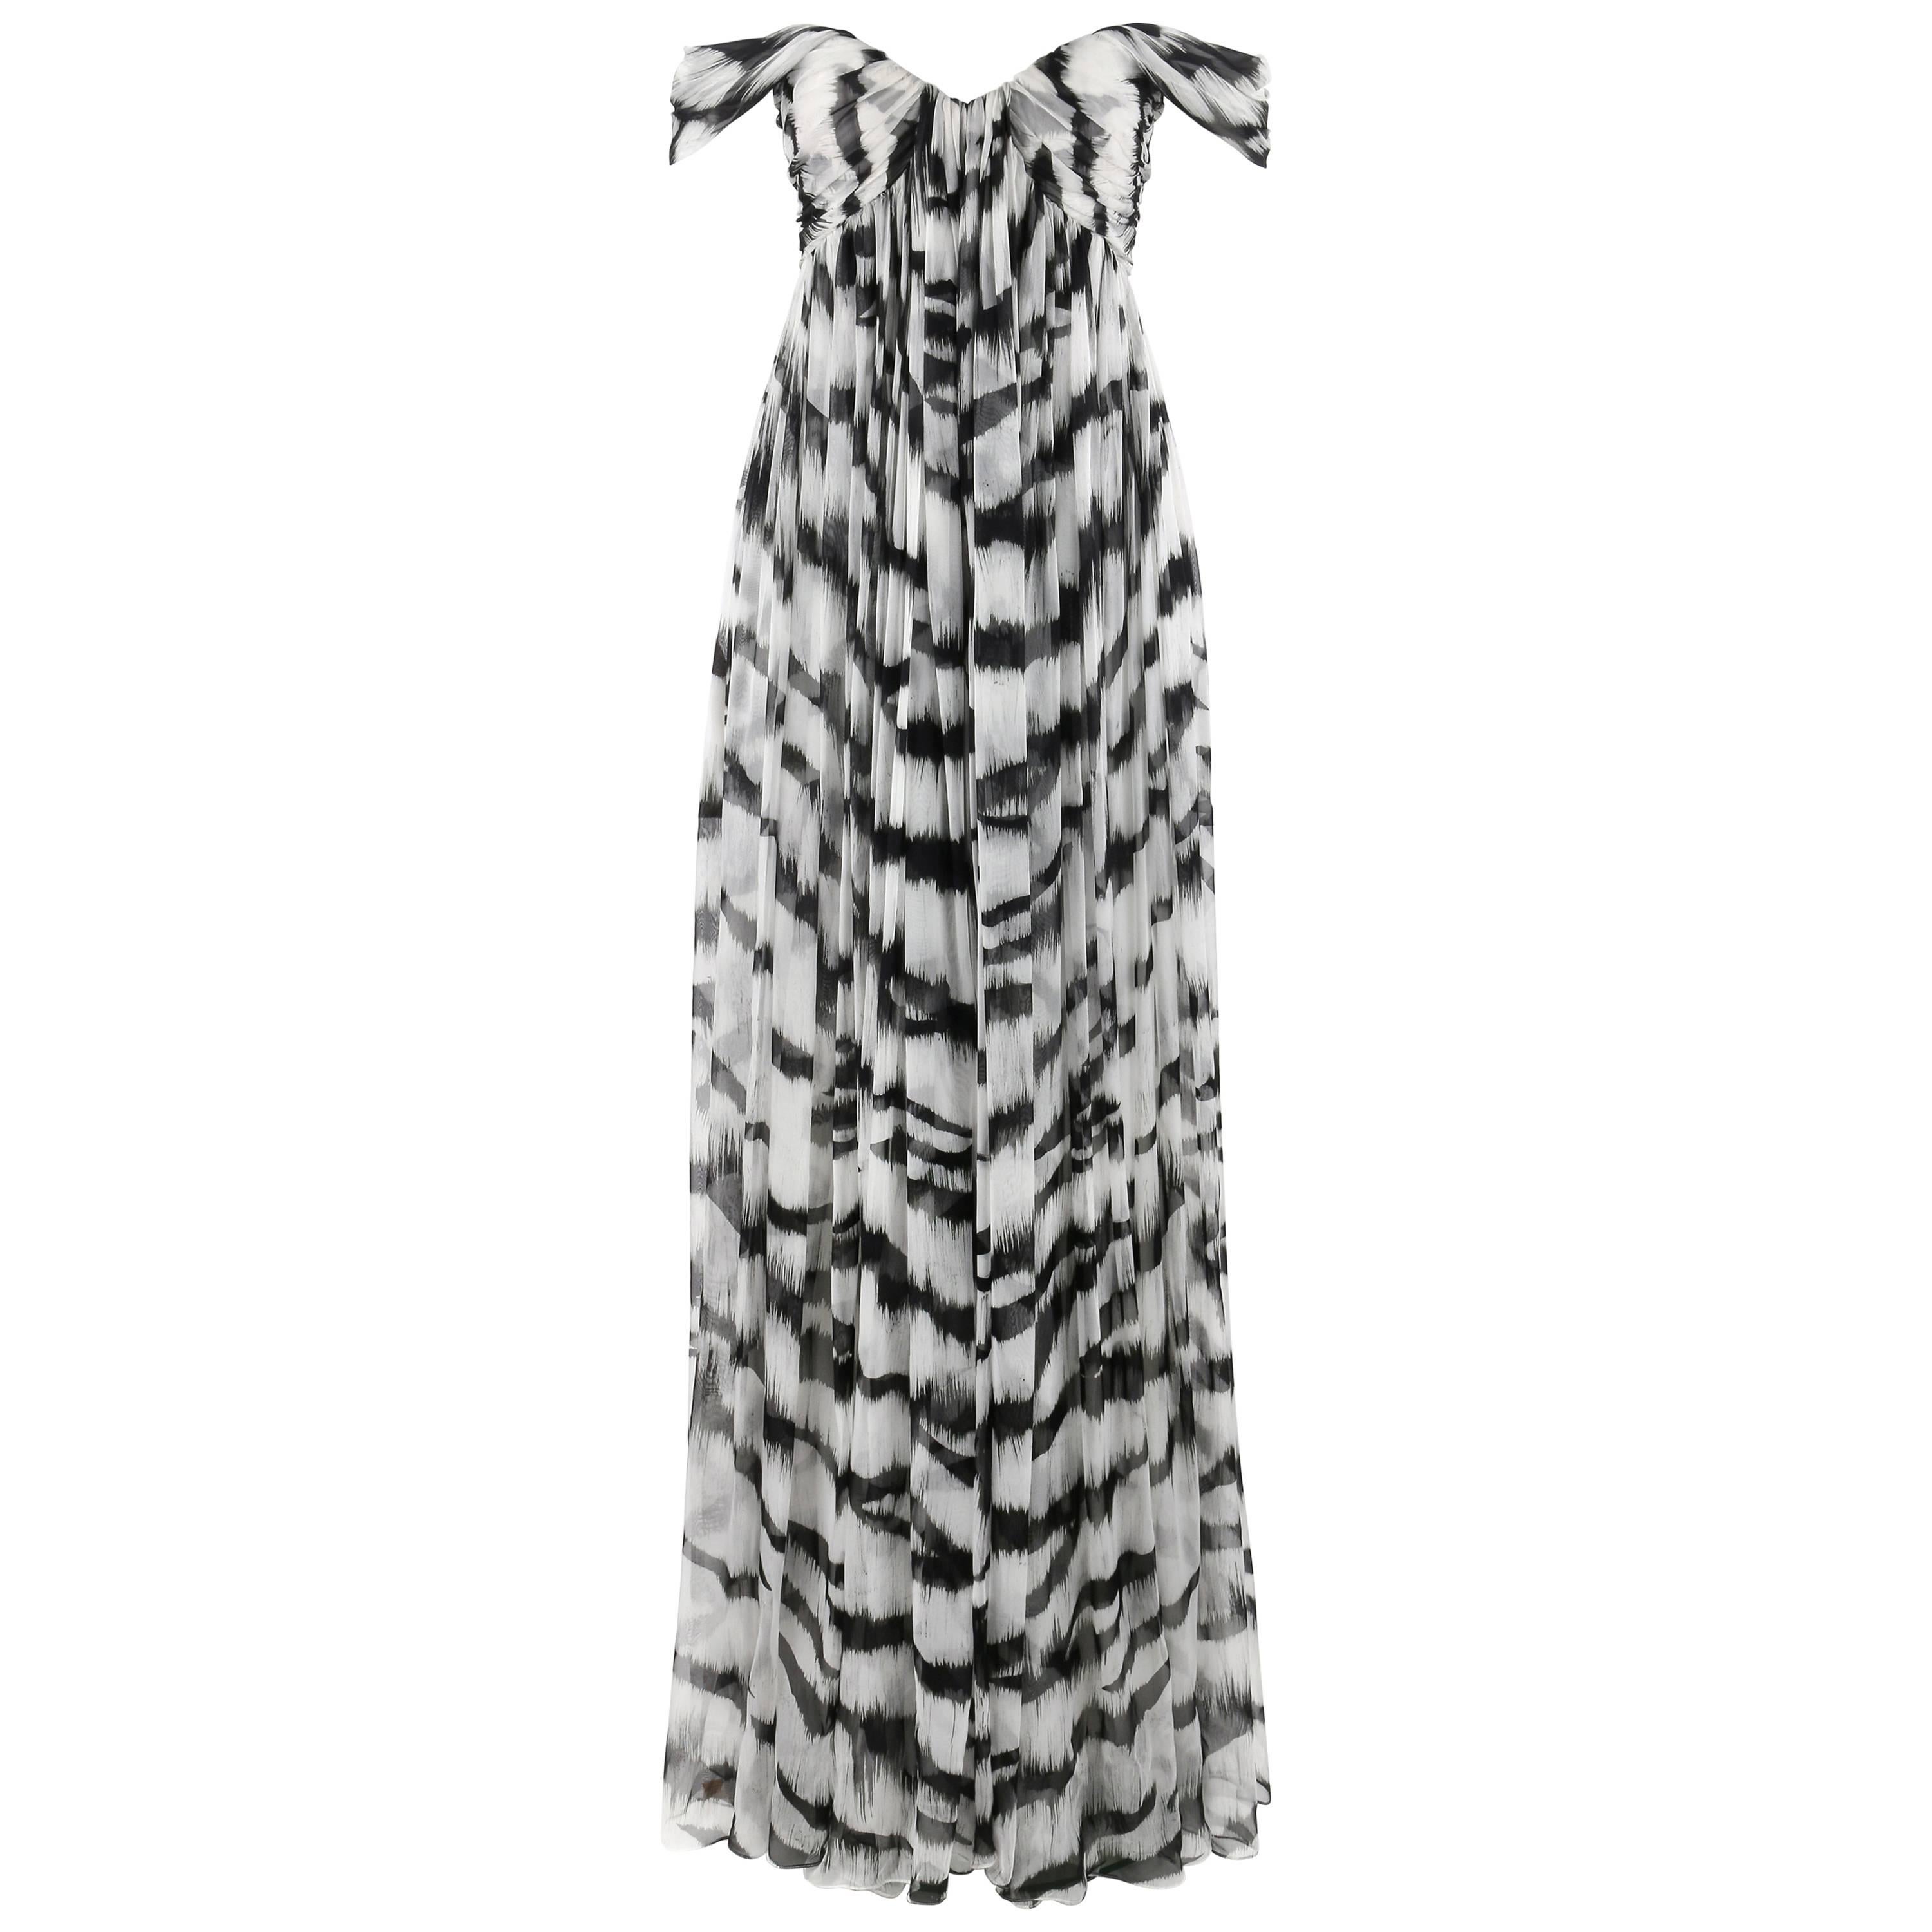 ALEXANDER McQUEEN S/S 2012 White Tiger Stripe Silk Chiffon Evening Gown NWT